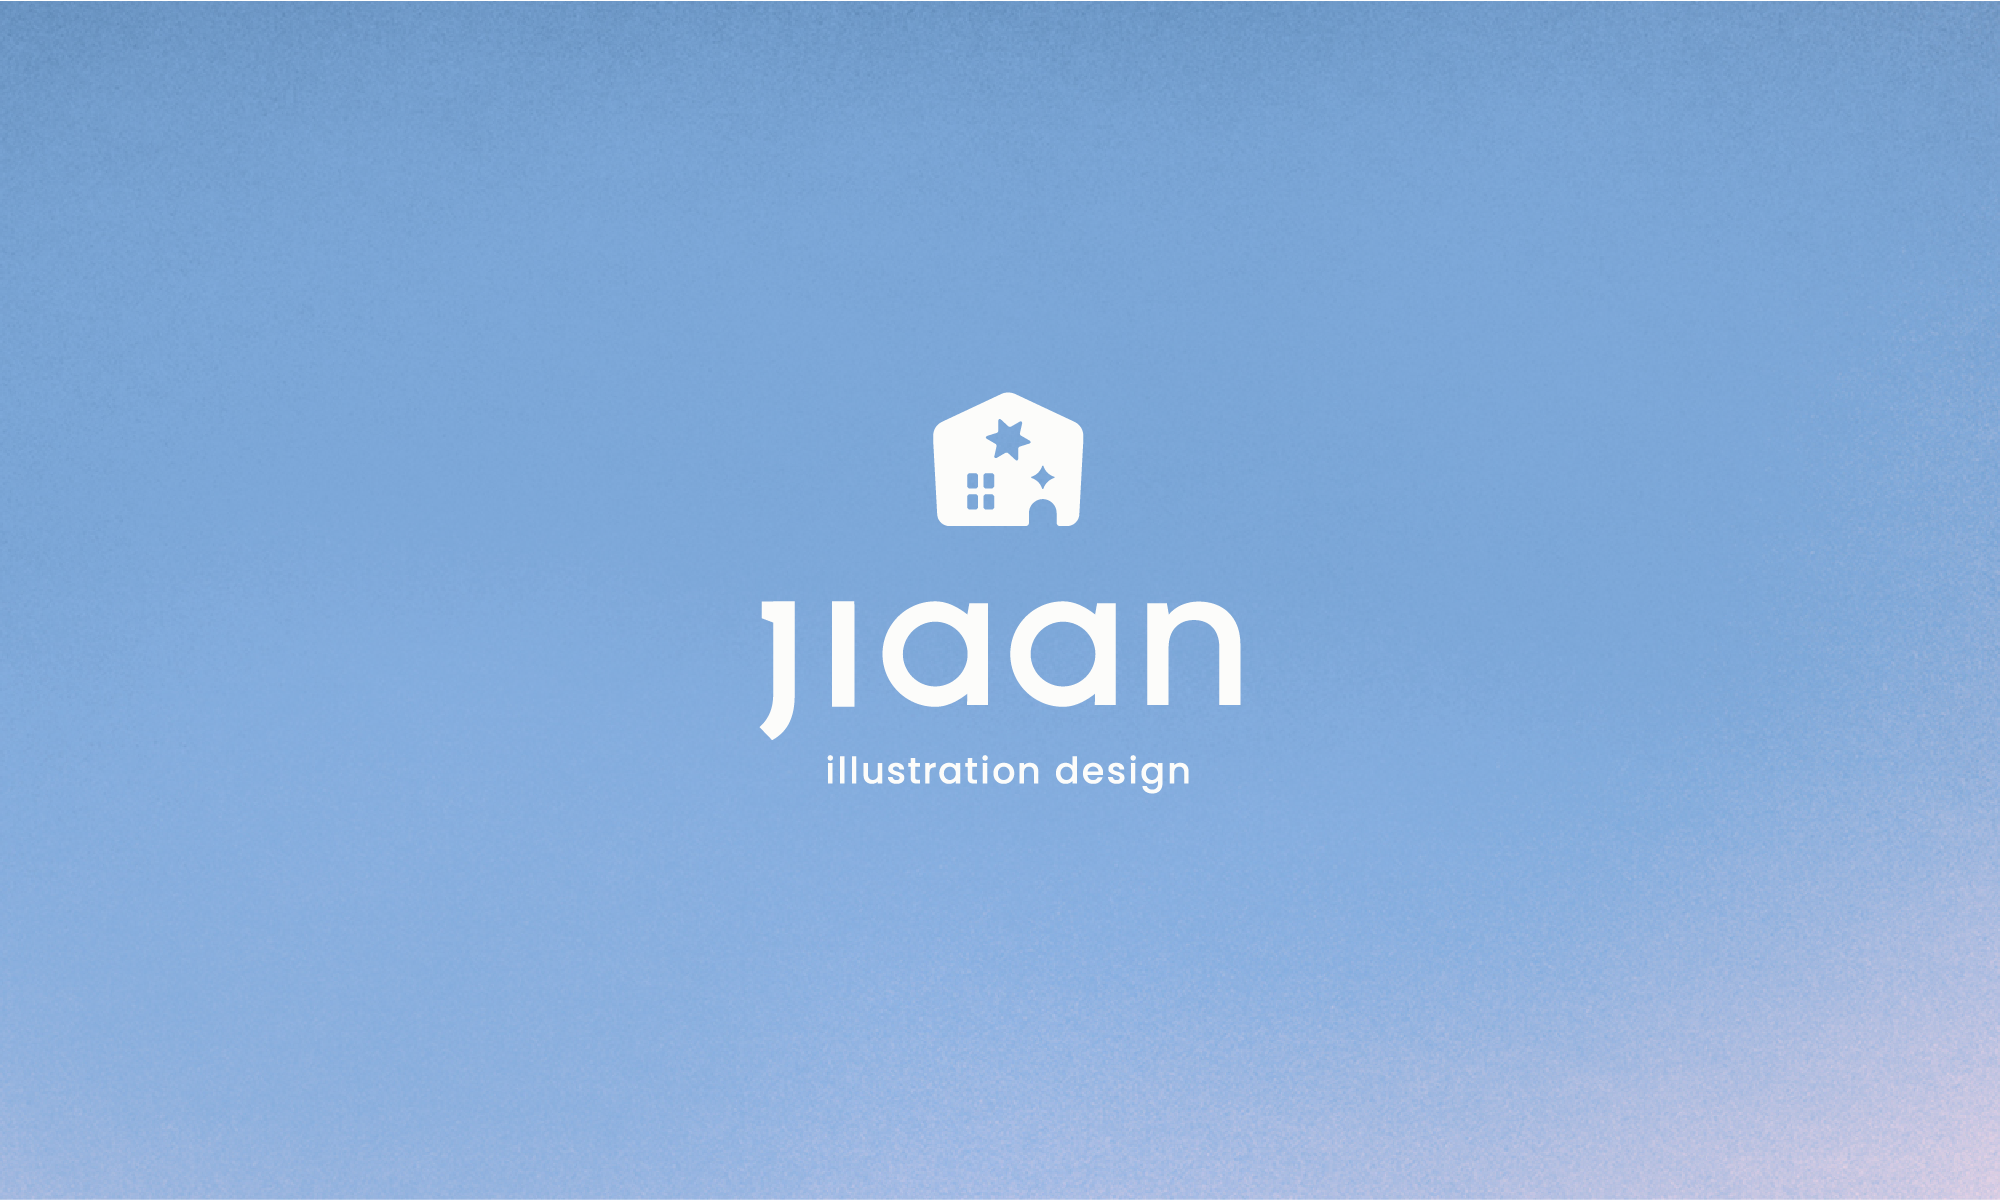 Jiaan 個人品牌識別設計 design by Jiaan 莊嘉安